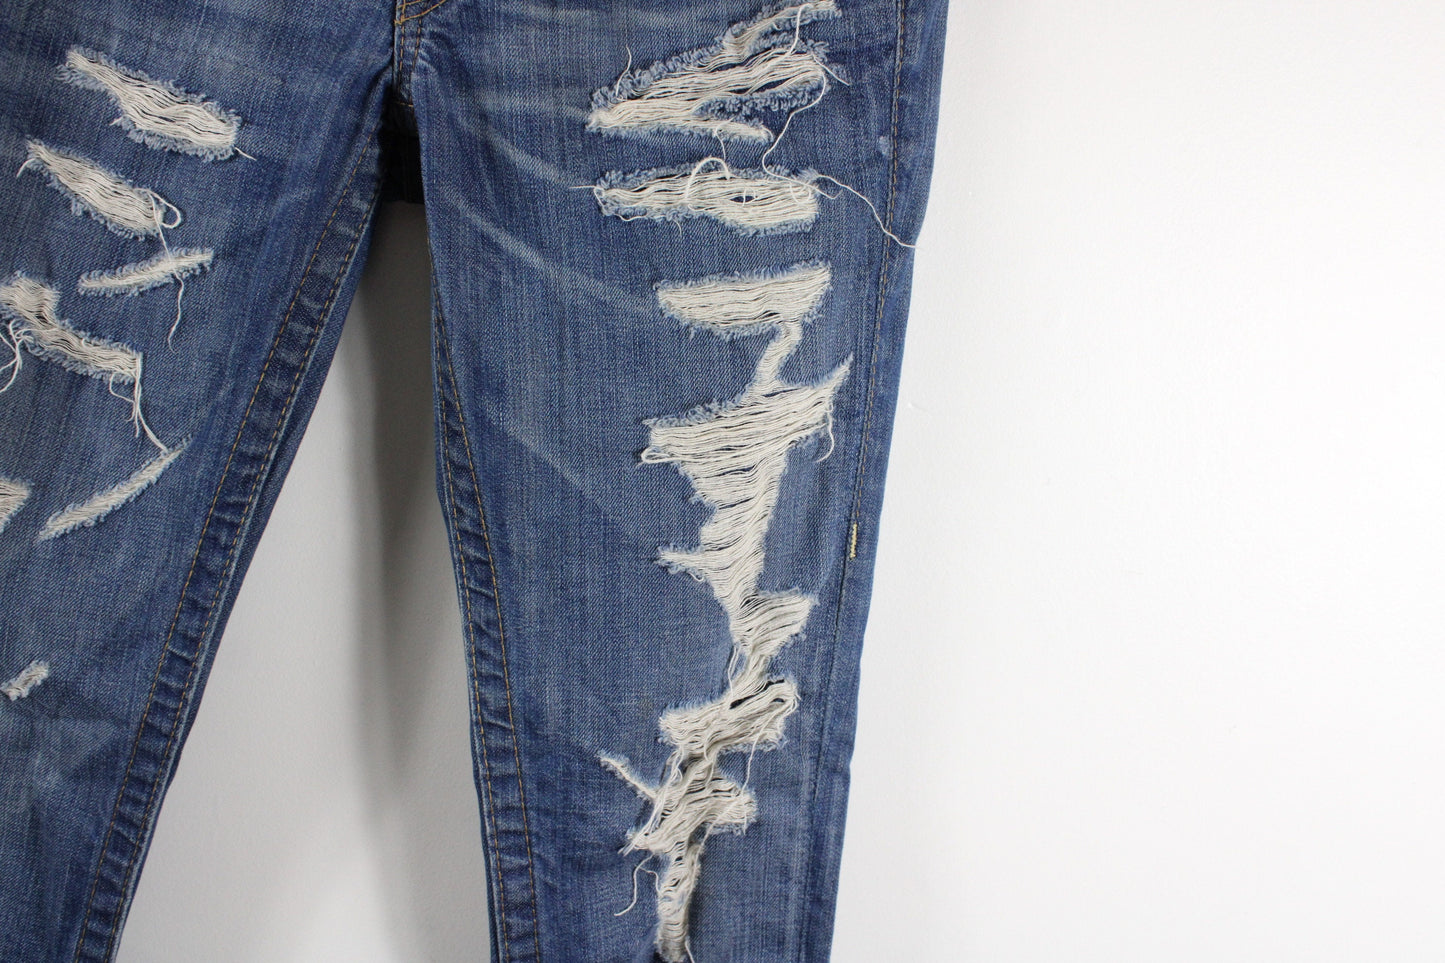 True Religion Jeans / Vintage Ripped Denim Trouser / 2000's Y2K Streetwear Clothing / Dark Blue / Size 26